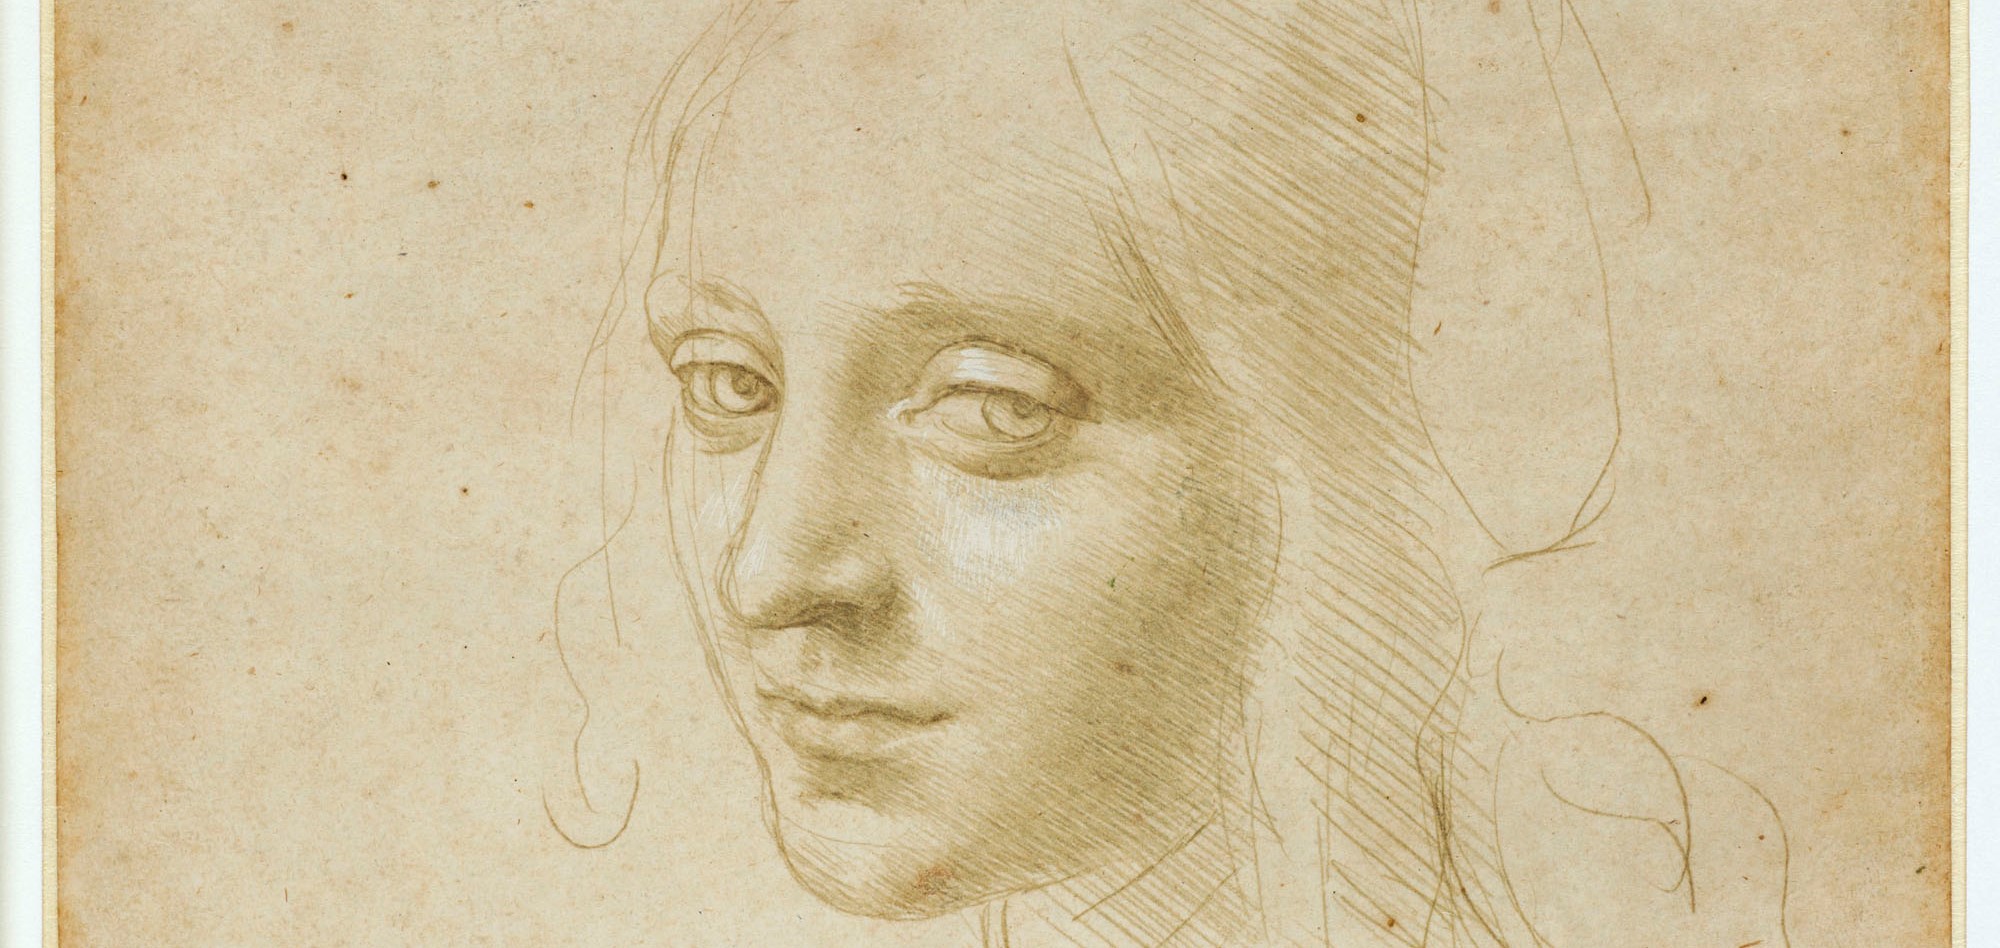 Le immagini più belle della mostra di Leonardo da Vinci a Torino